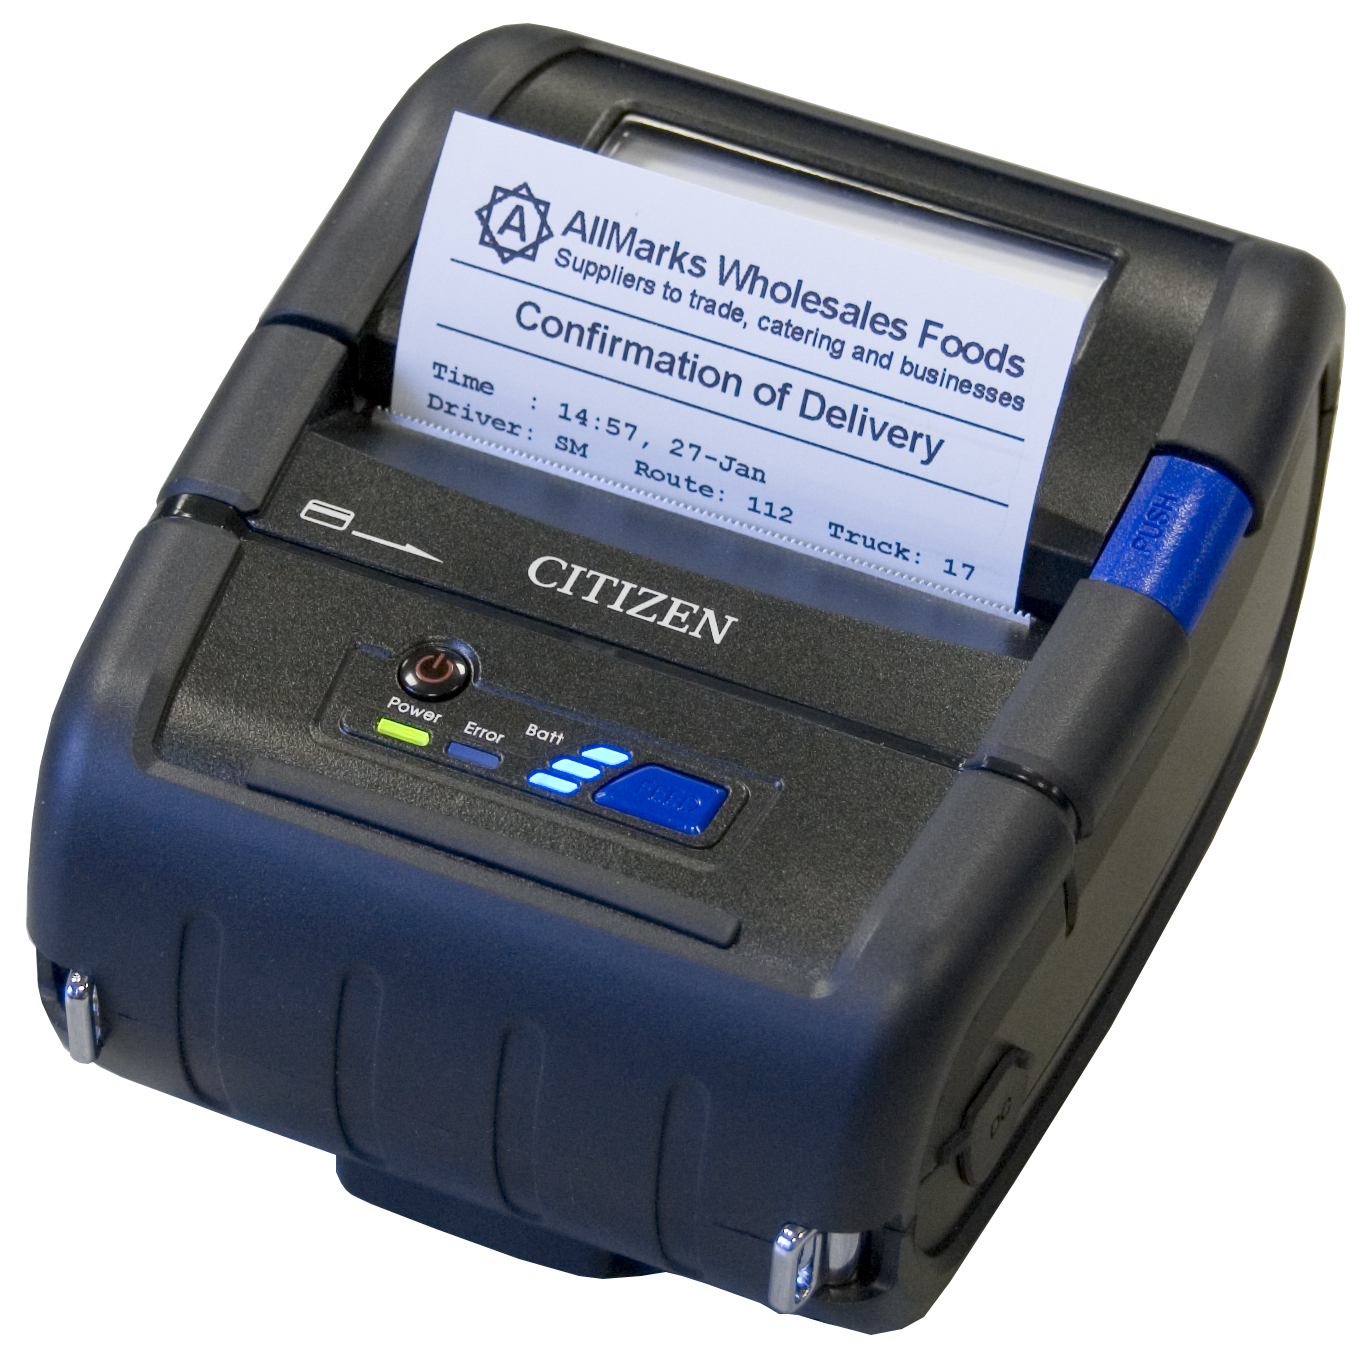 Citizen CMP-30 Mobile Bill Printer